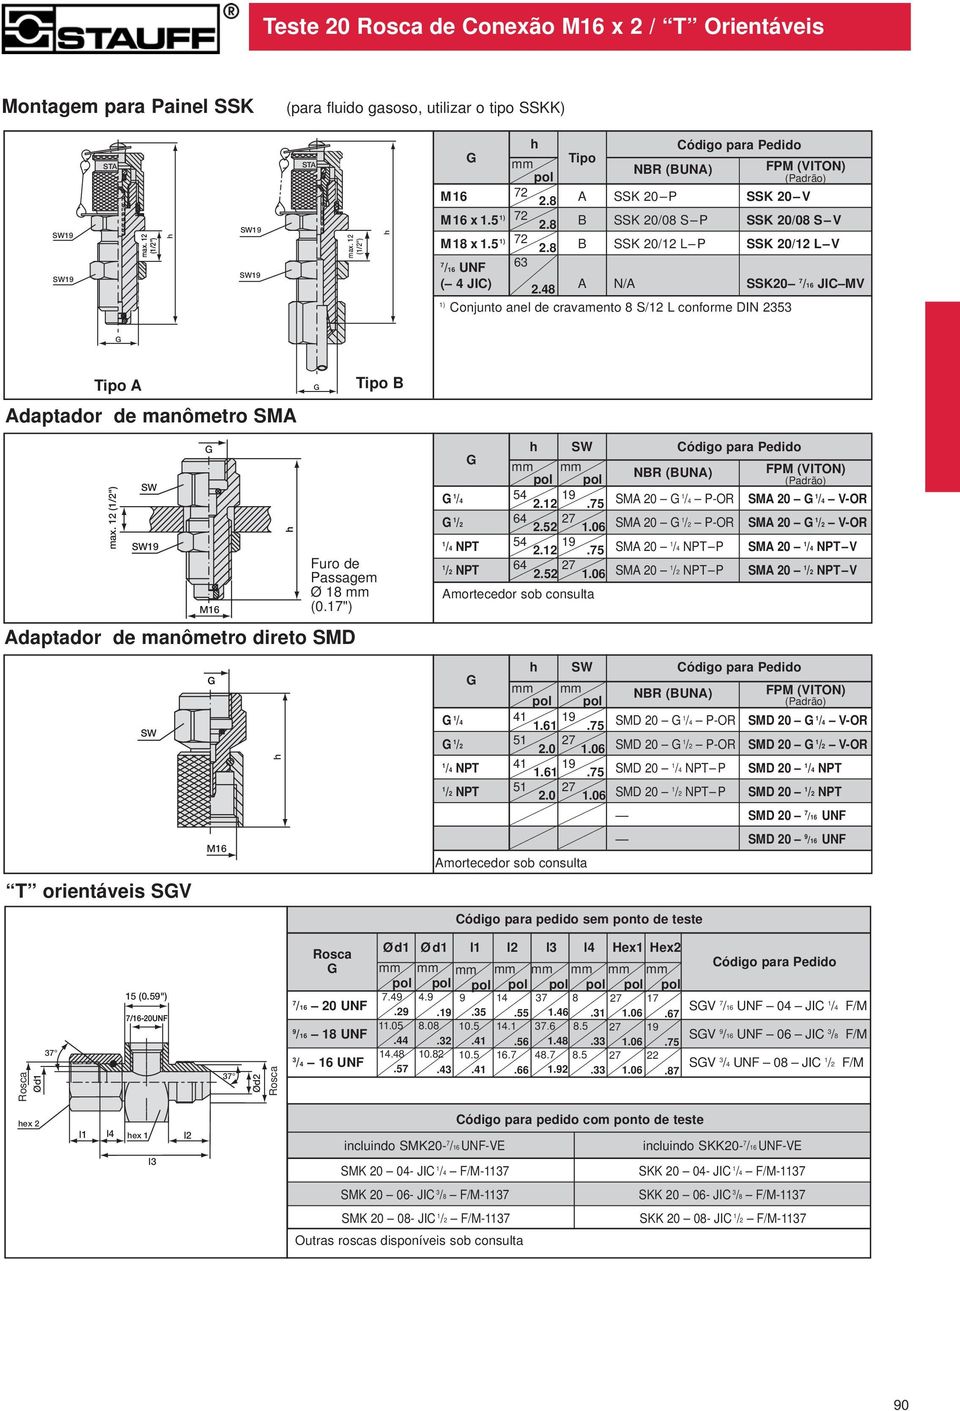 48 A N/A SSK20 /6 JIC MV ) Conjunto anel de cravamento 8 S/2 conforme DIN 2353 Tipo A Adaptador de manômetro SMA Tipo B max. 2 (/2") 9 Adaptador de manômetro direto SMD M6 Furo de Passagem Ø 8 mm (0.